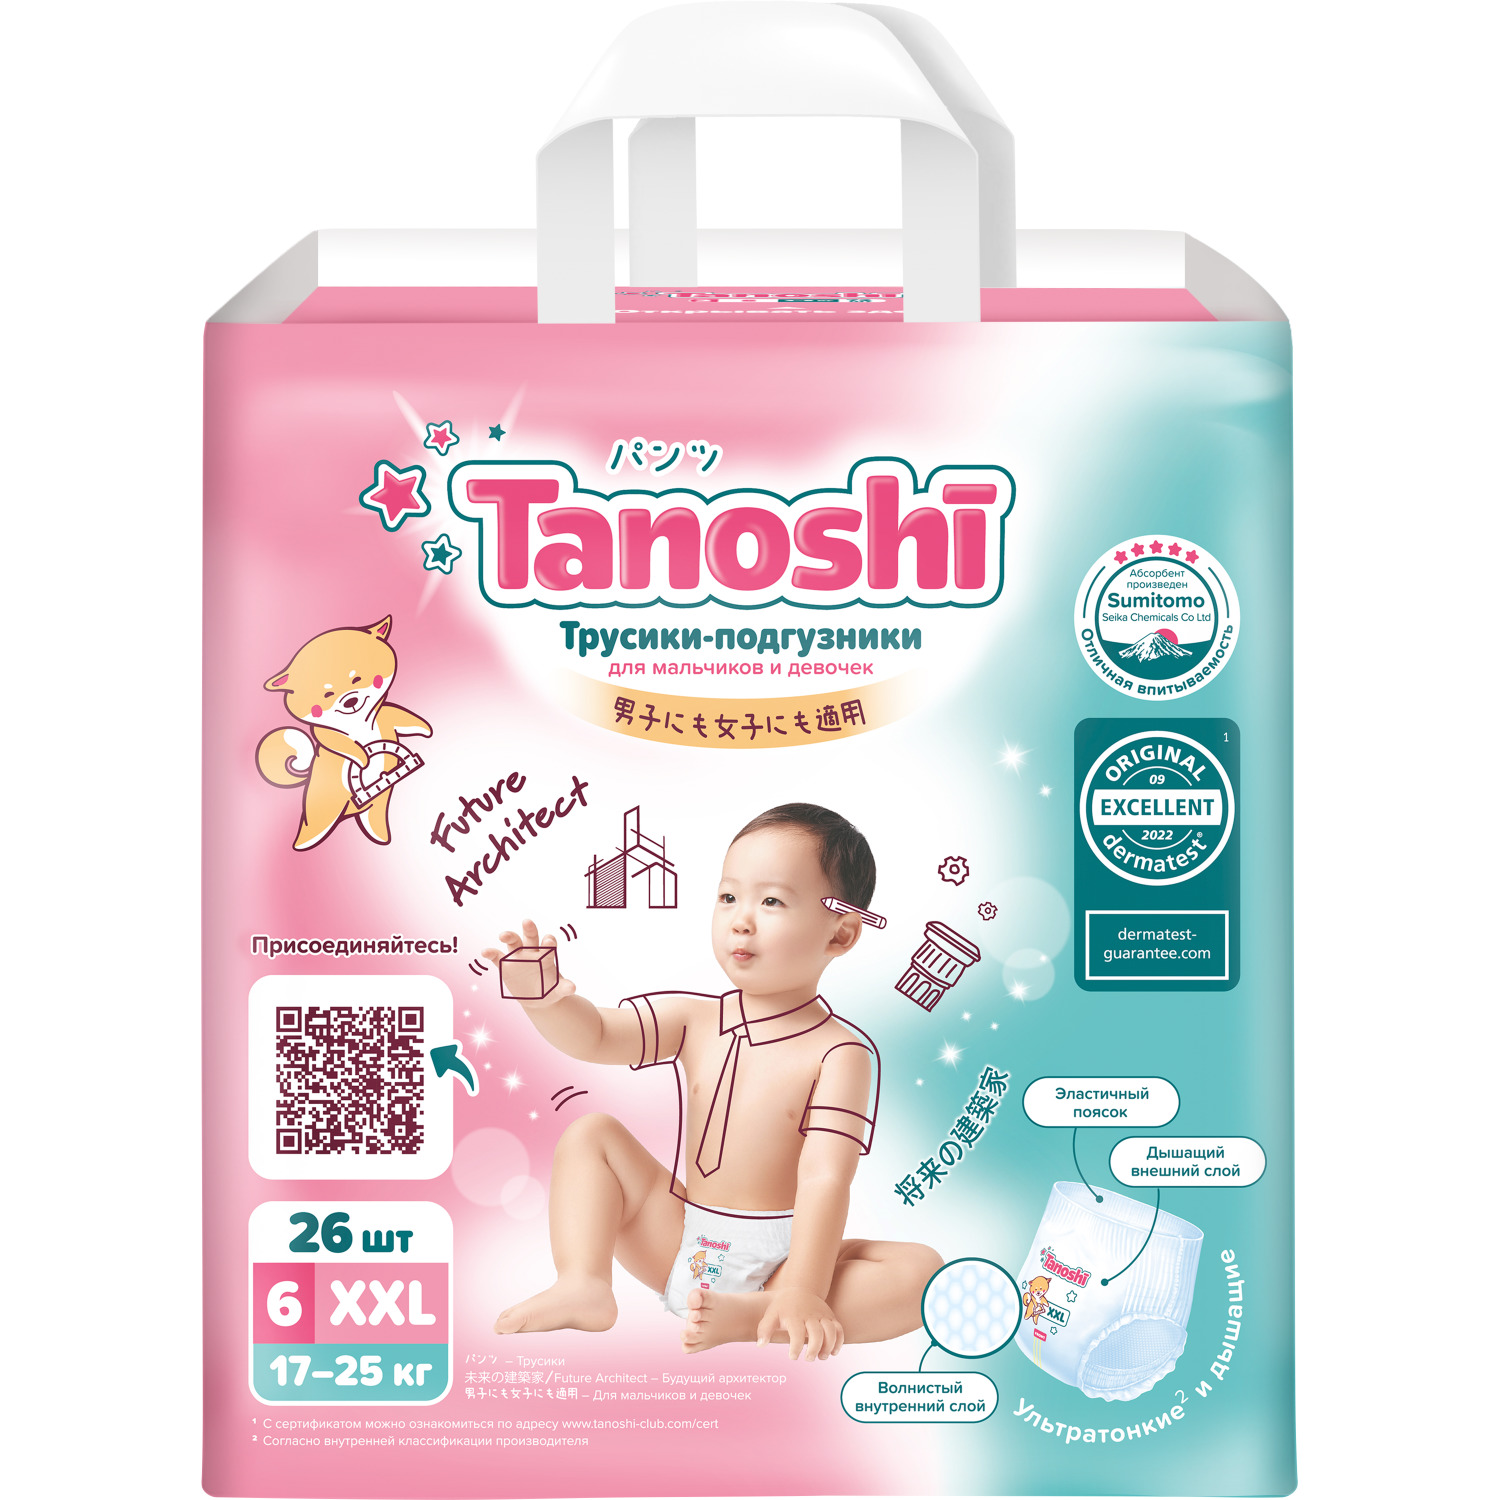 фото Трусики-подгузники для детей tanoshi размер xxl 17-25 кг 26 шт